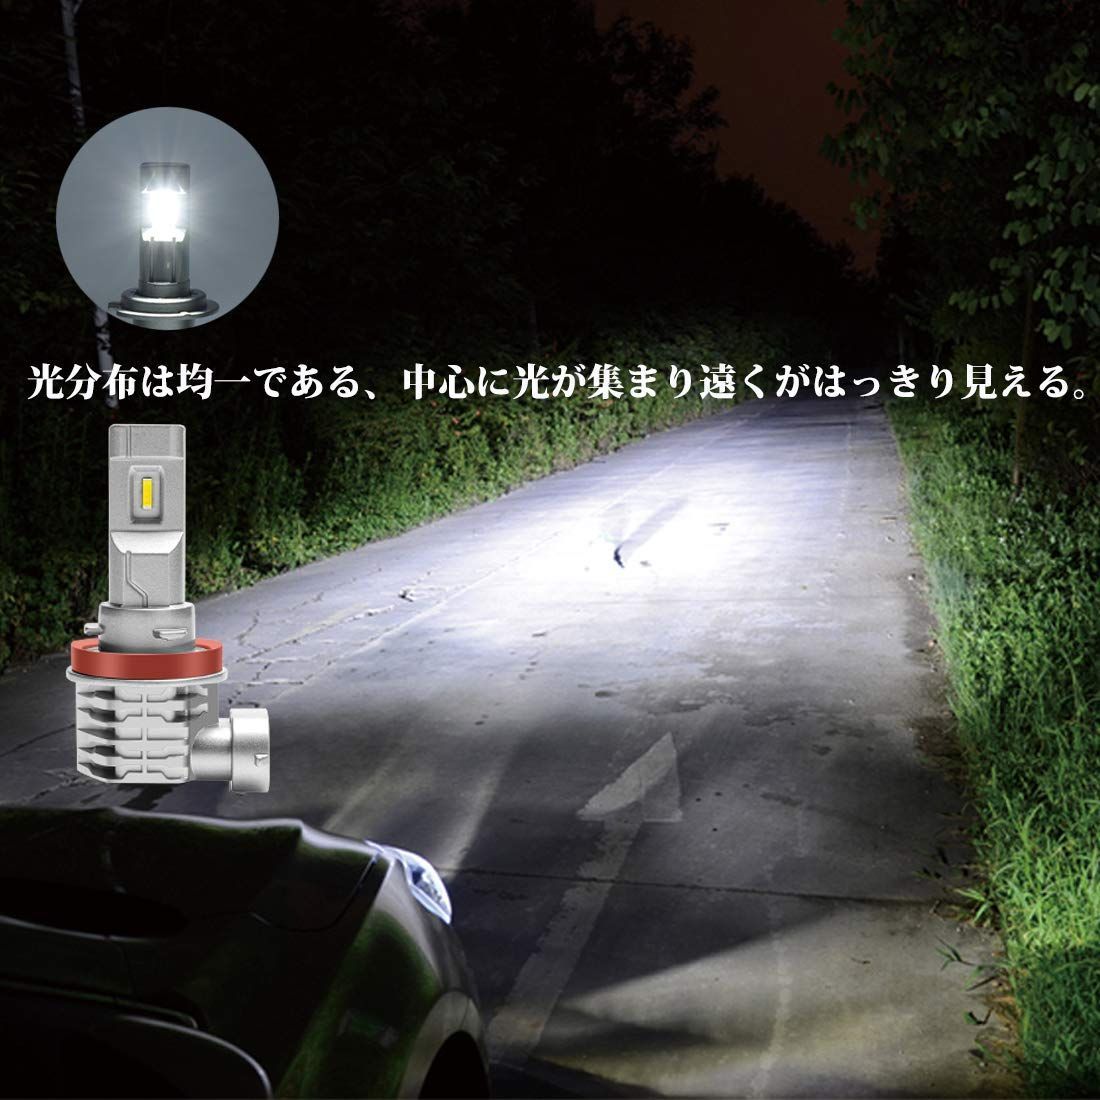 新品・即日発送】Briteye(まぶしい) H11 LEDヘッドライト 車検対応 CREEチップ搭載 6500K ホワイト H8/H9/H11/H16  LEDバルブ 一体型 車用 ファンレス (2個入） - メルカリ